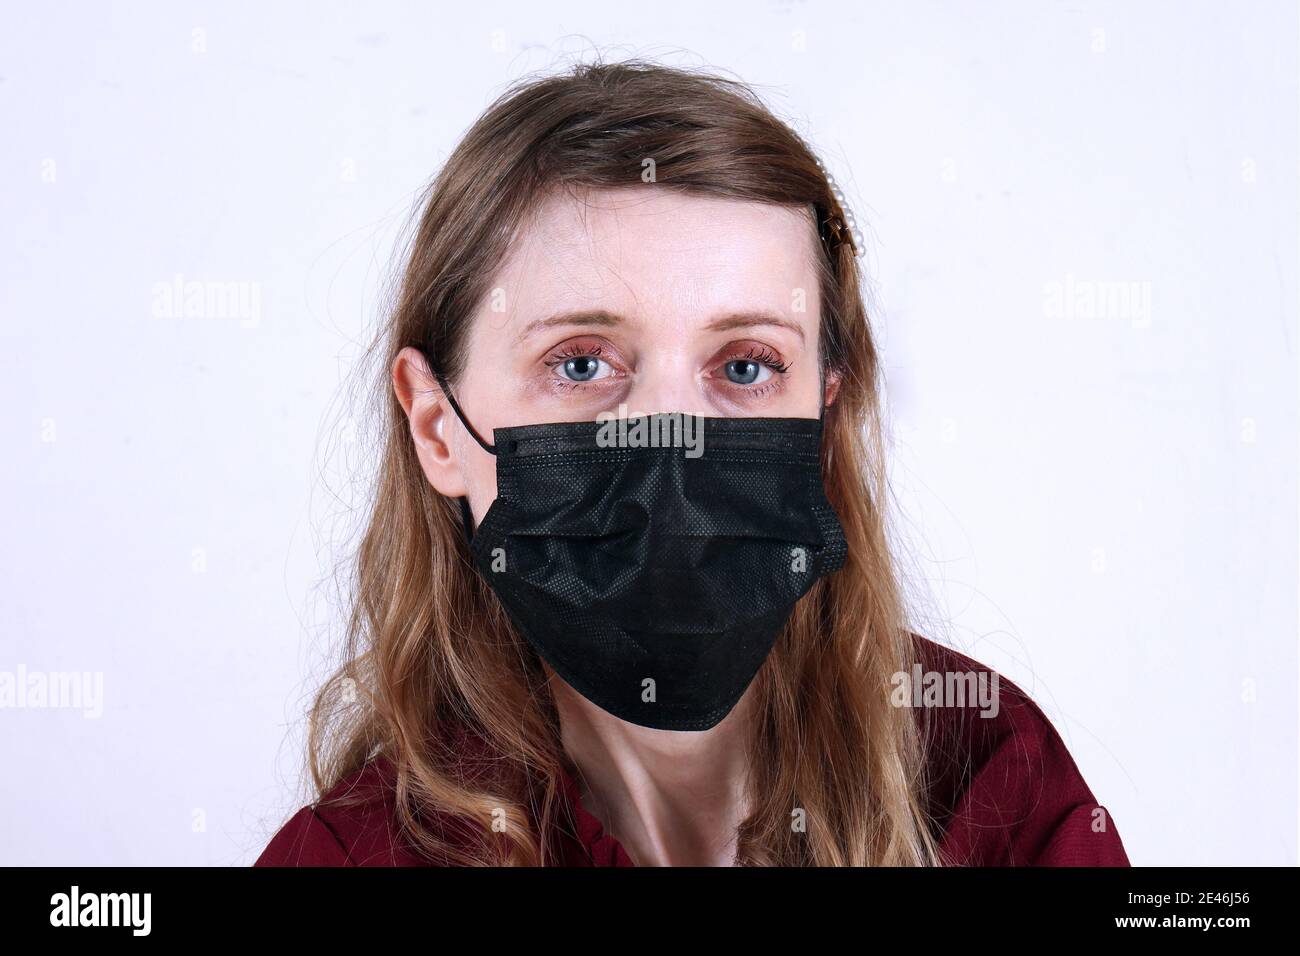 Teint pâle goth style jeune fille adolescente portant noir jetable masque de protection contre les virus Banque D'Images